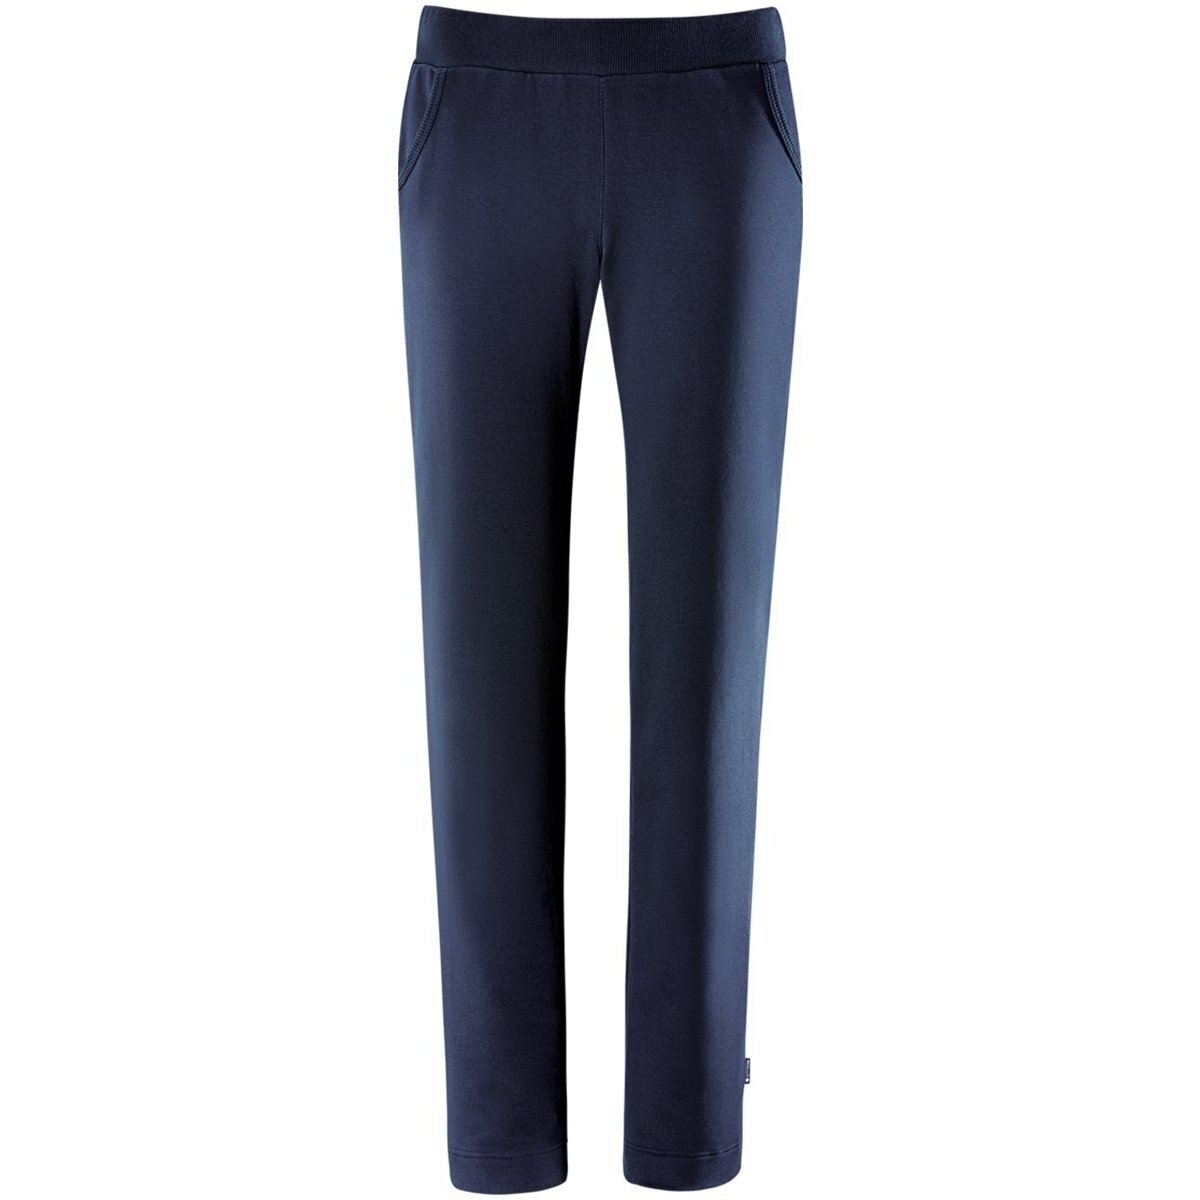 Vêtements Femme Pantalons Schneider Sportswear  Bleu